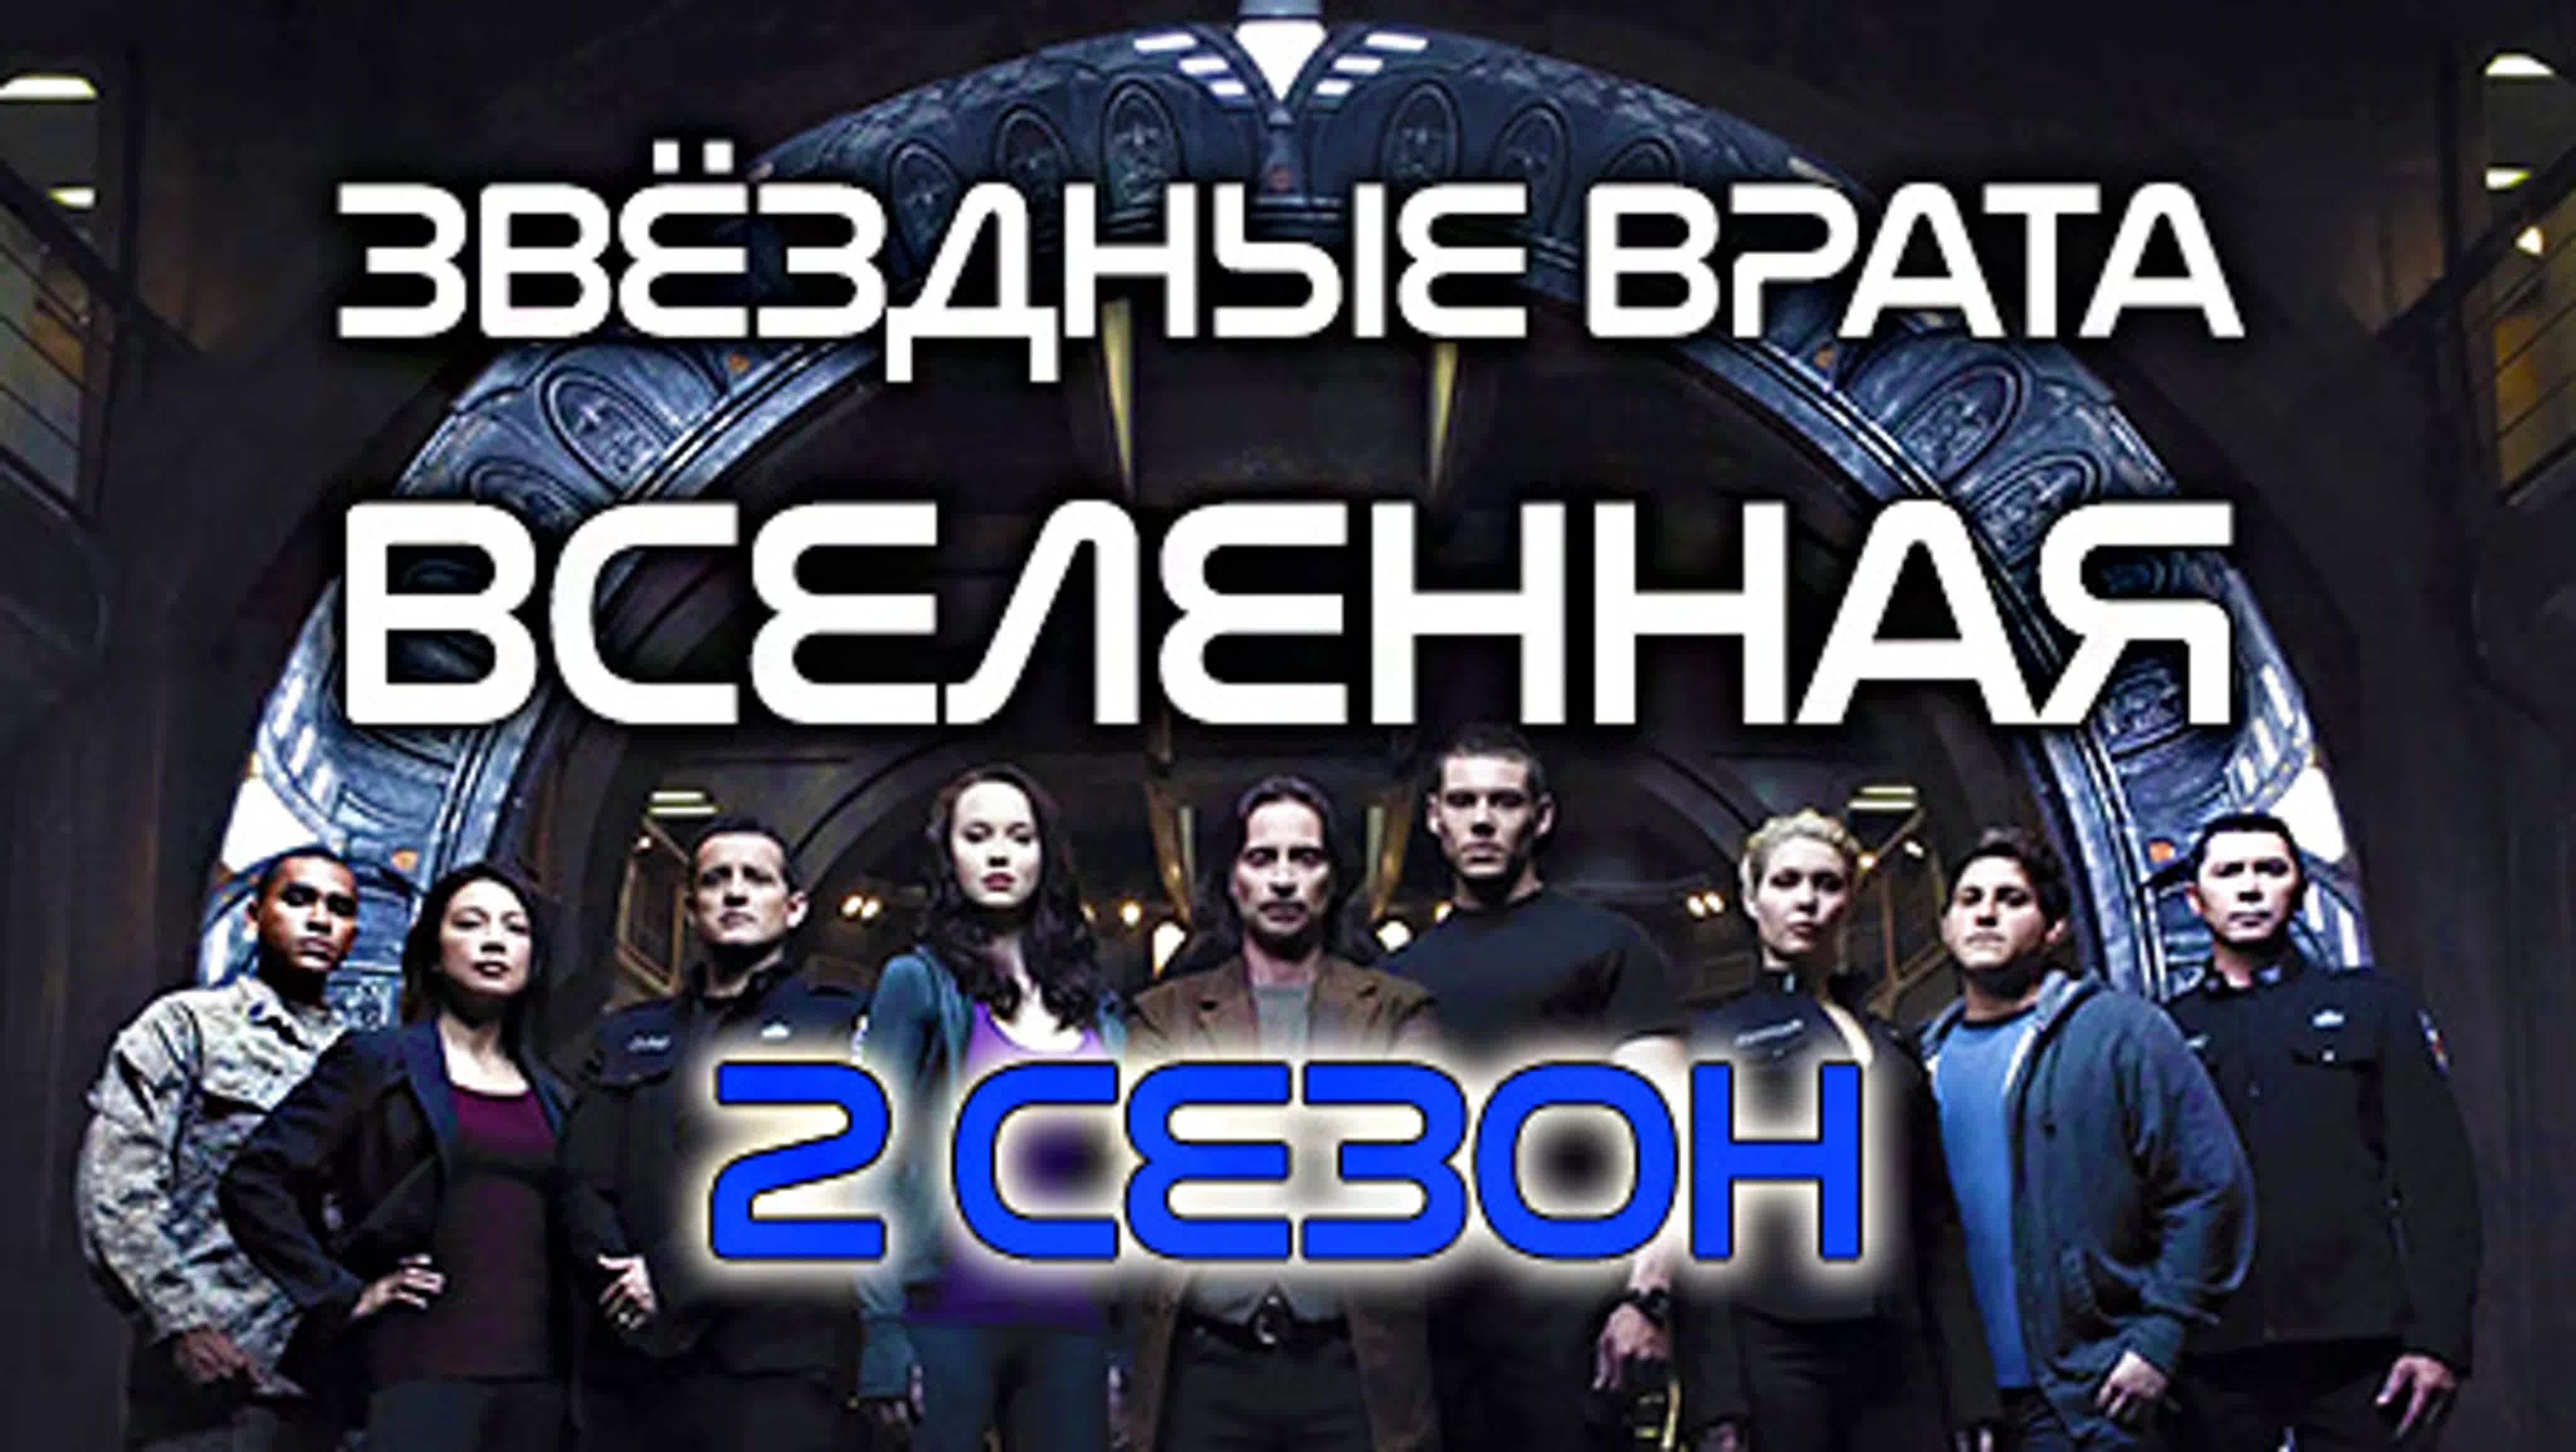 Звёздные врата: Вселенная (2009-2010, 2 сезона)